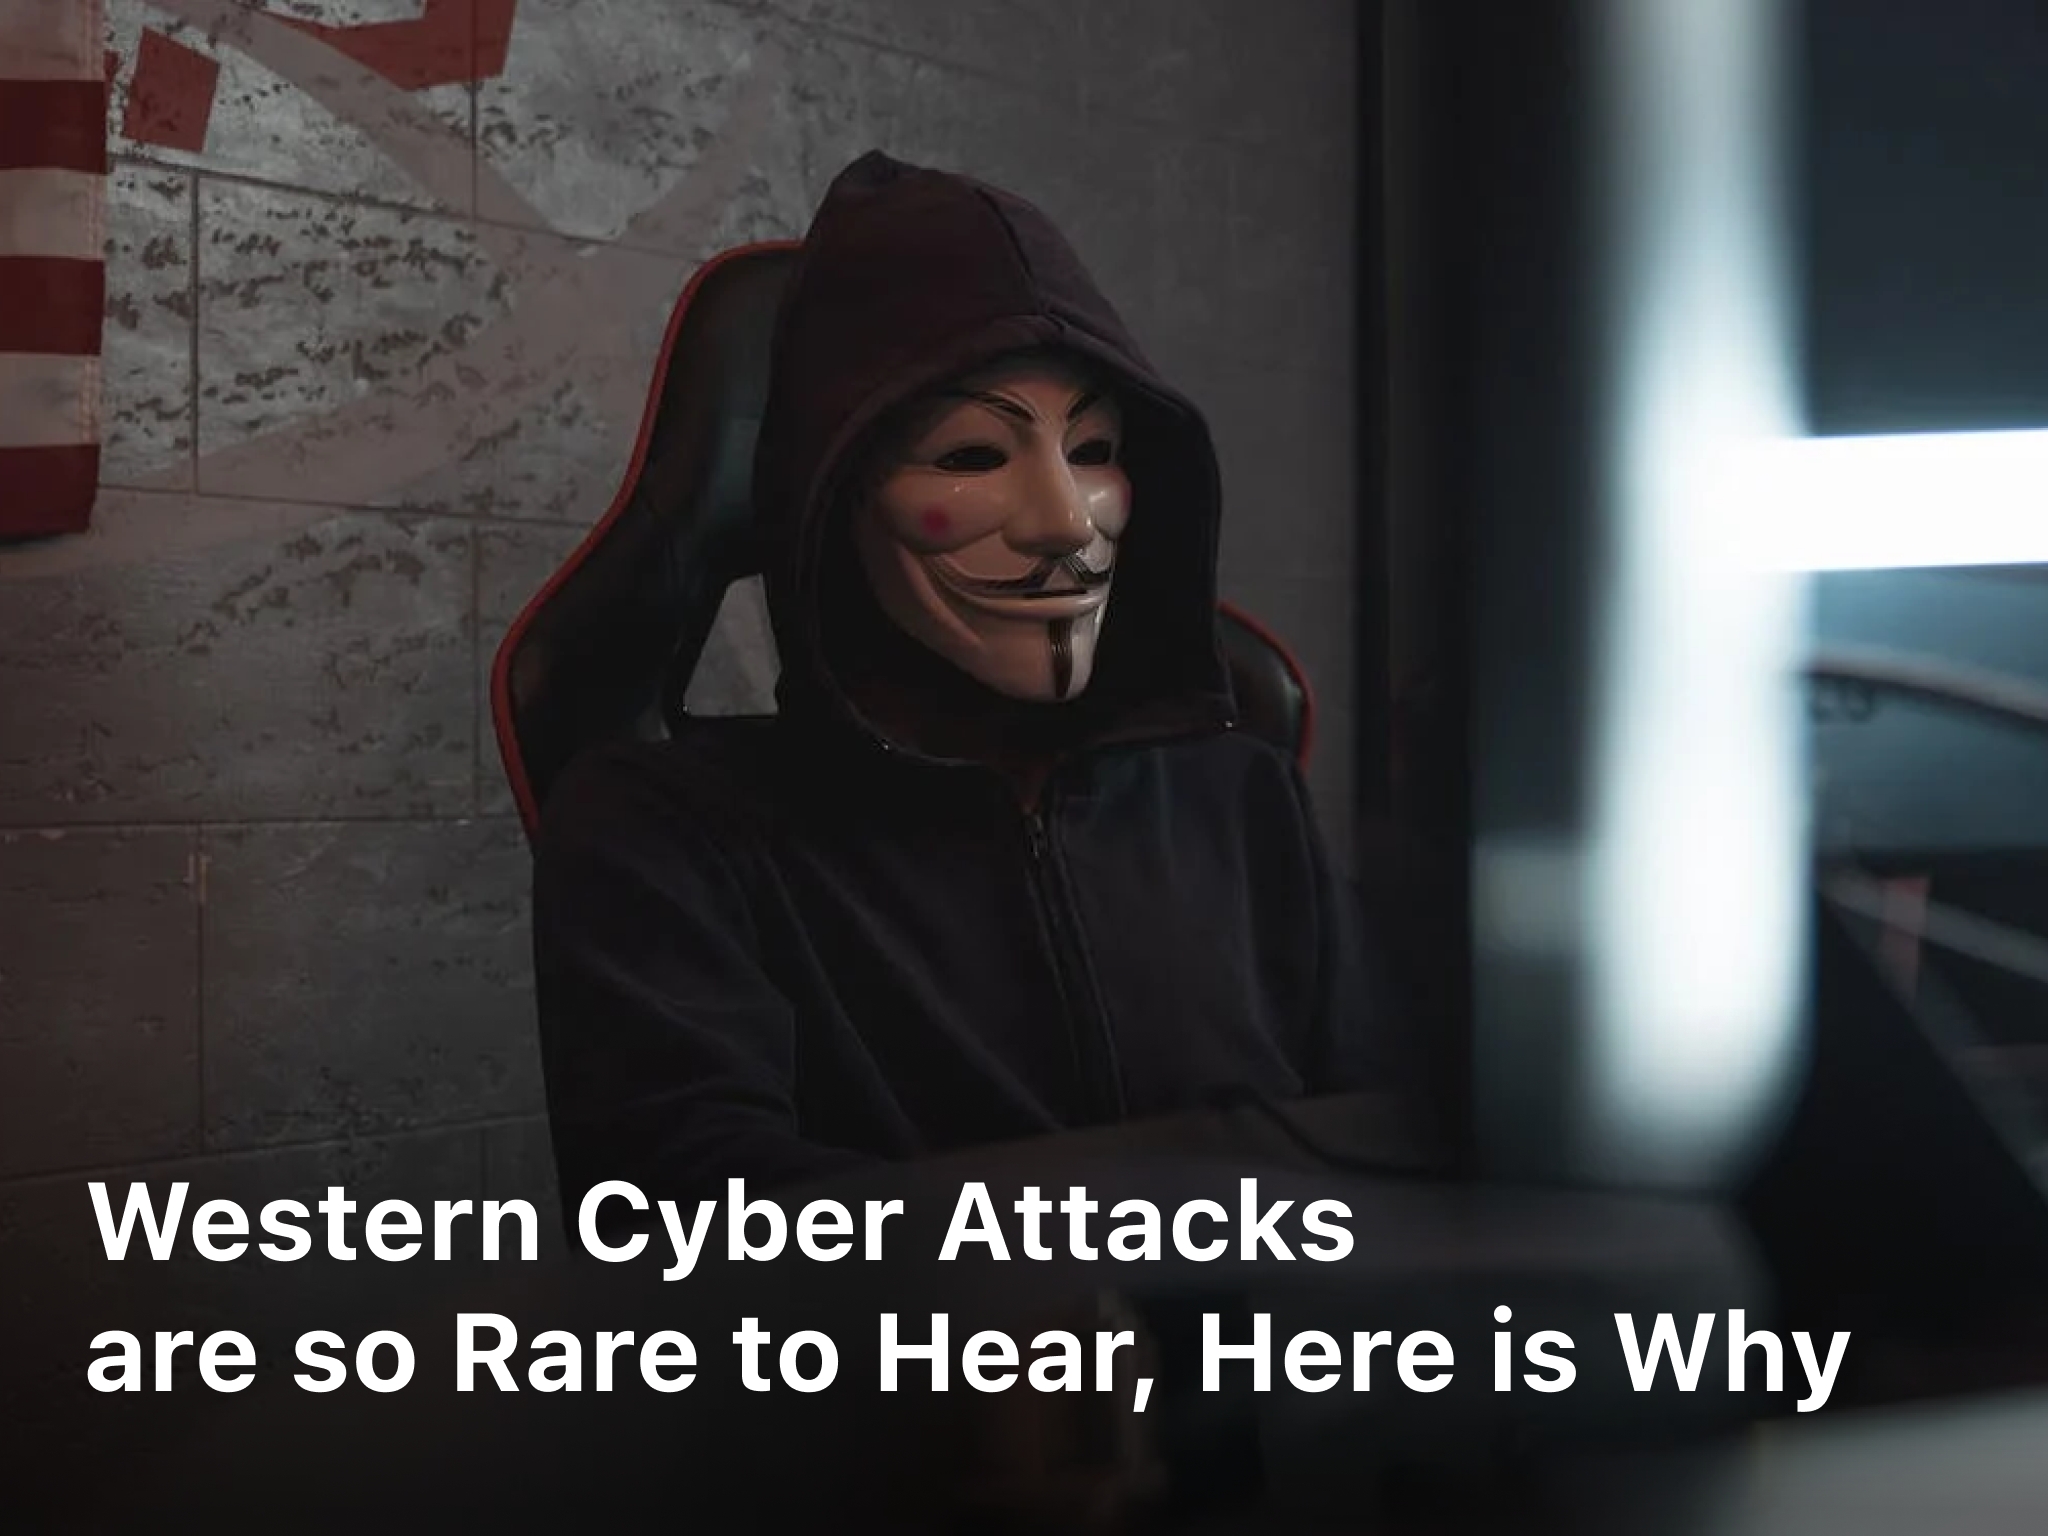 Western cyber attacks are so rare